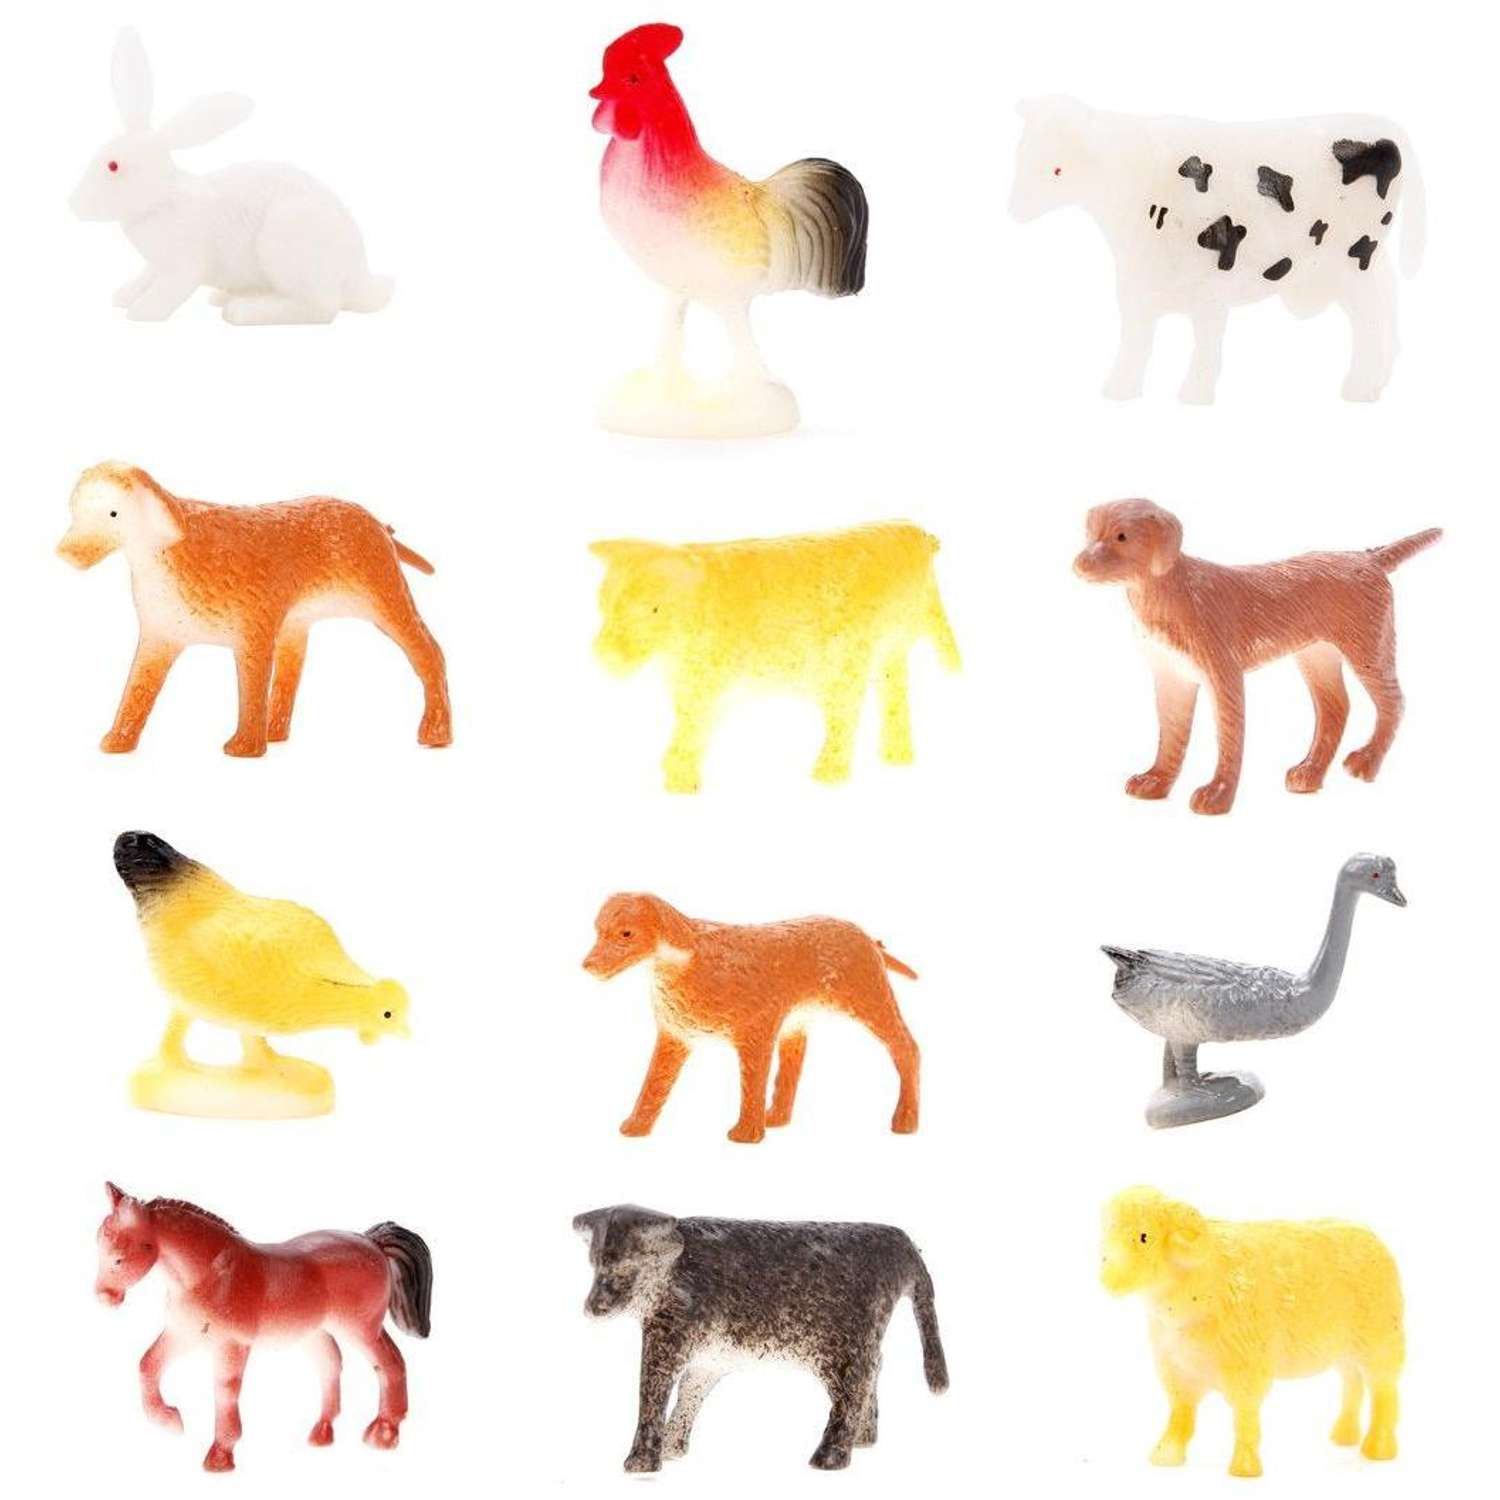 Фигурки животных Домашних Наша Игрушка набор игровой для развития и познания 4-8 см 12 шт - фото 1